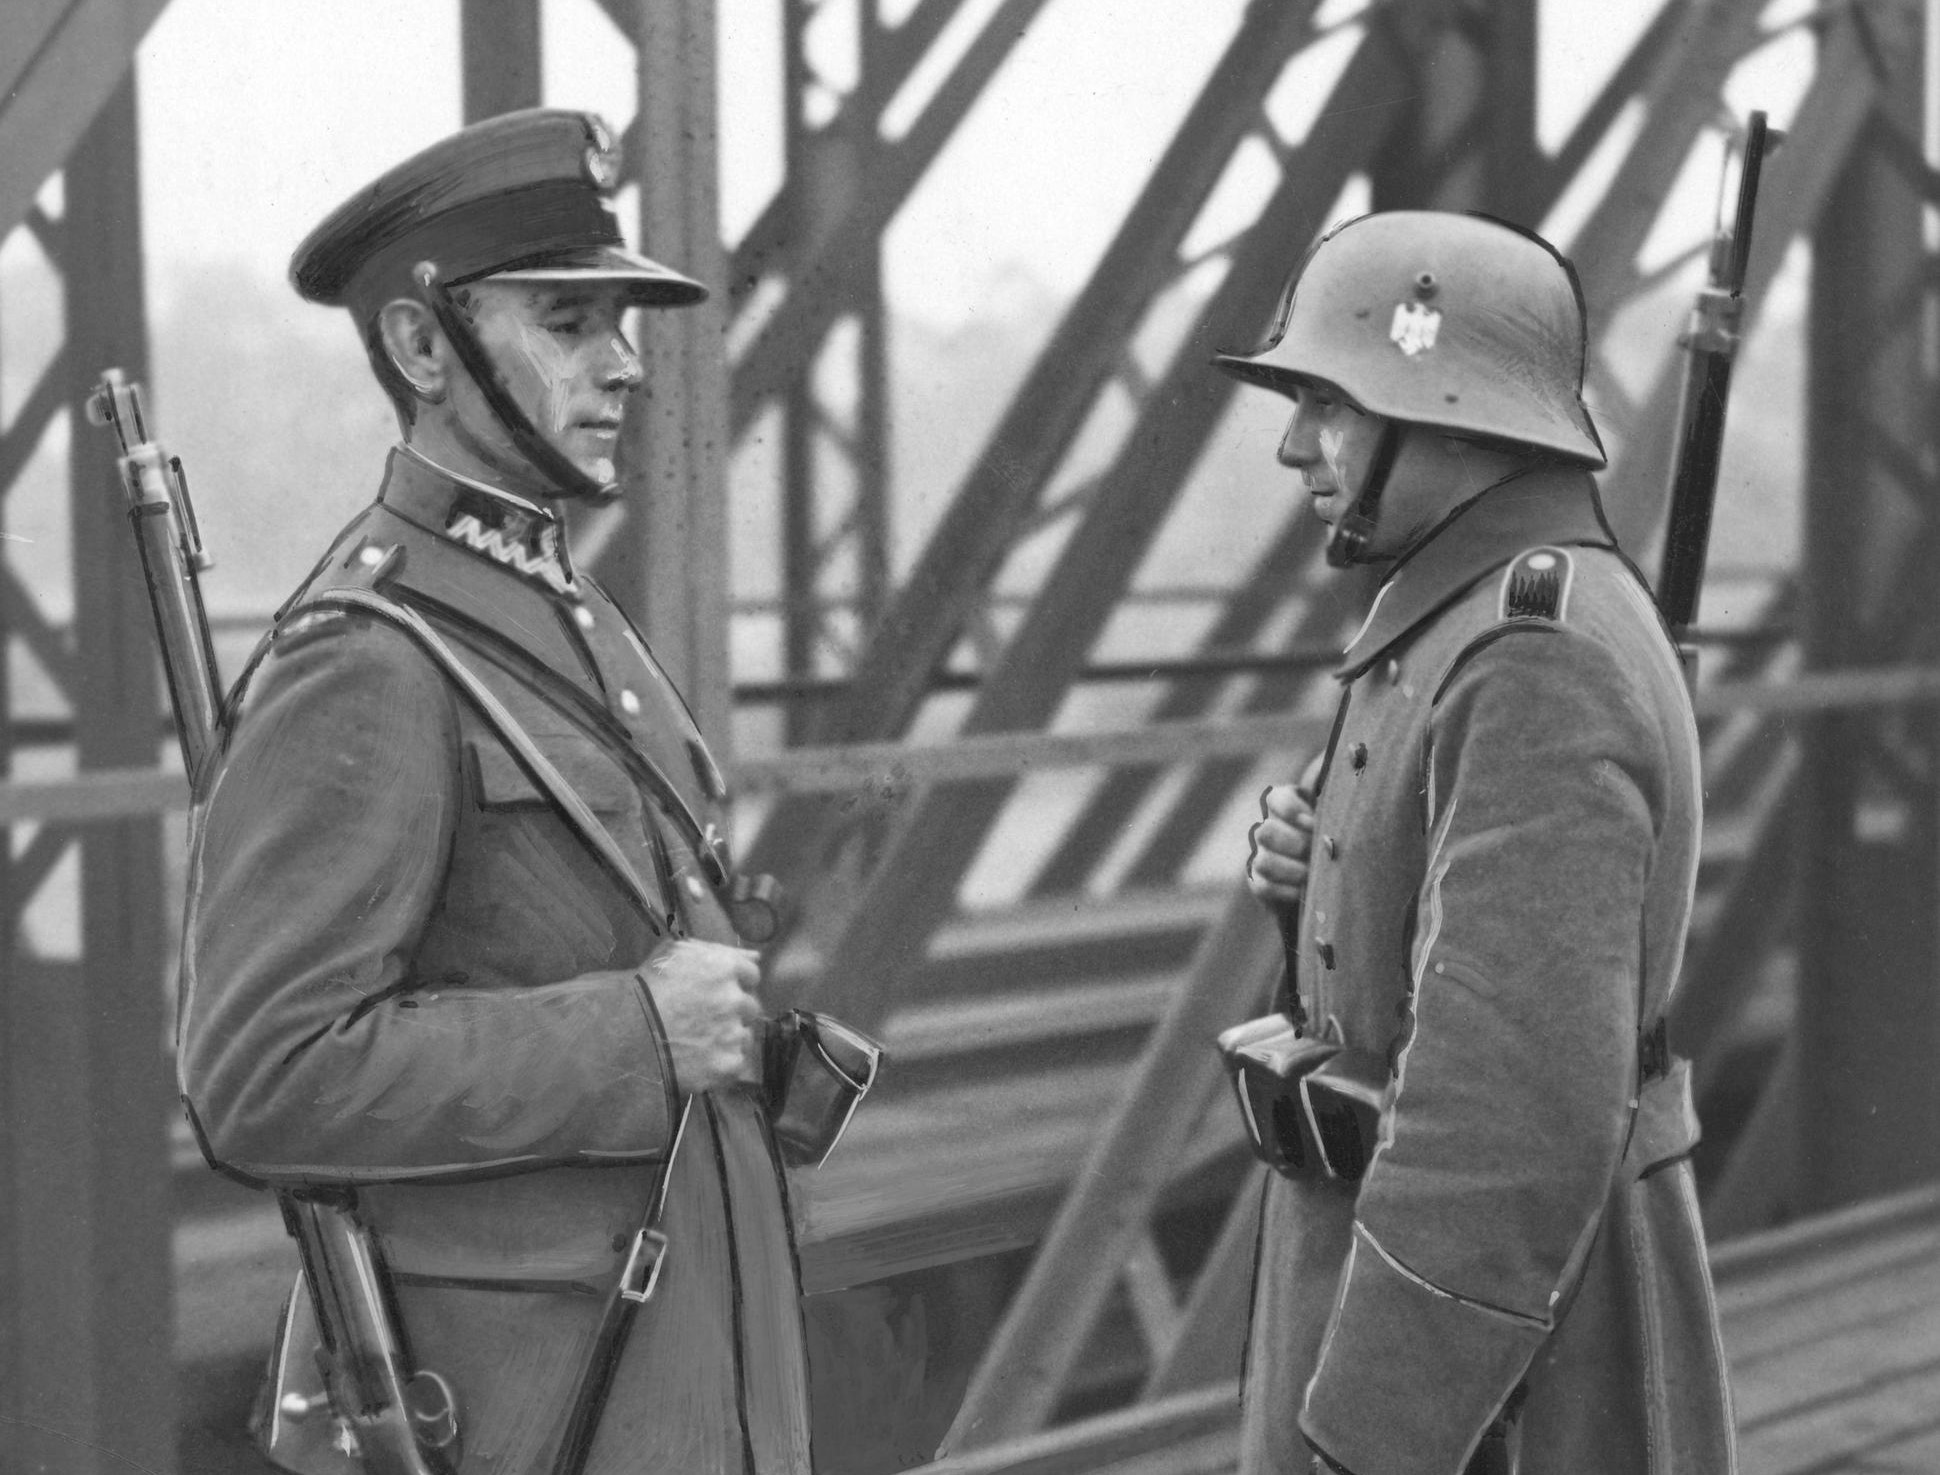 Incydent w Boguminie – czy mogło dojść do starcia Wojska Polskiego z Wehrmachtem już w 1938 r.?